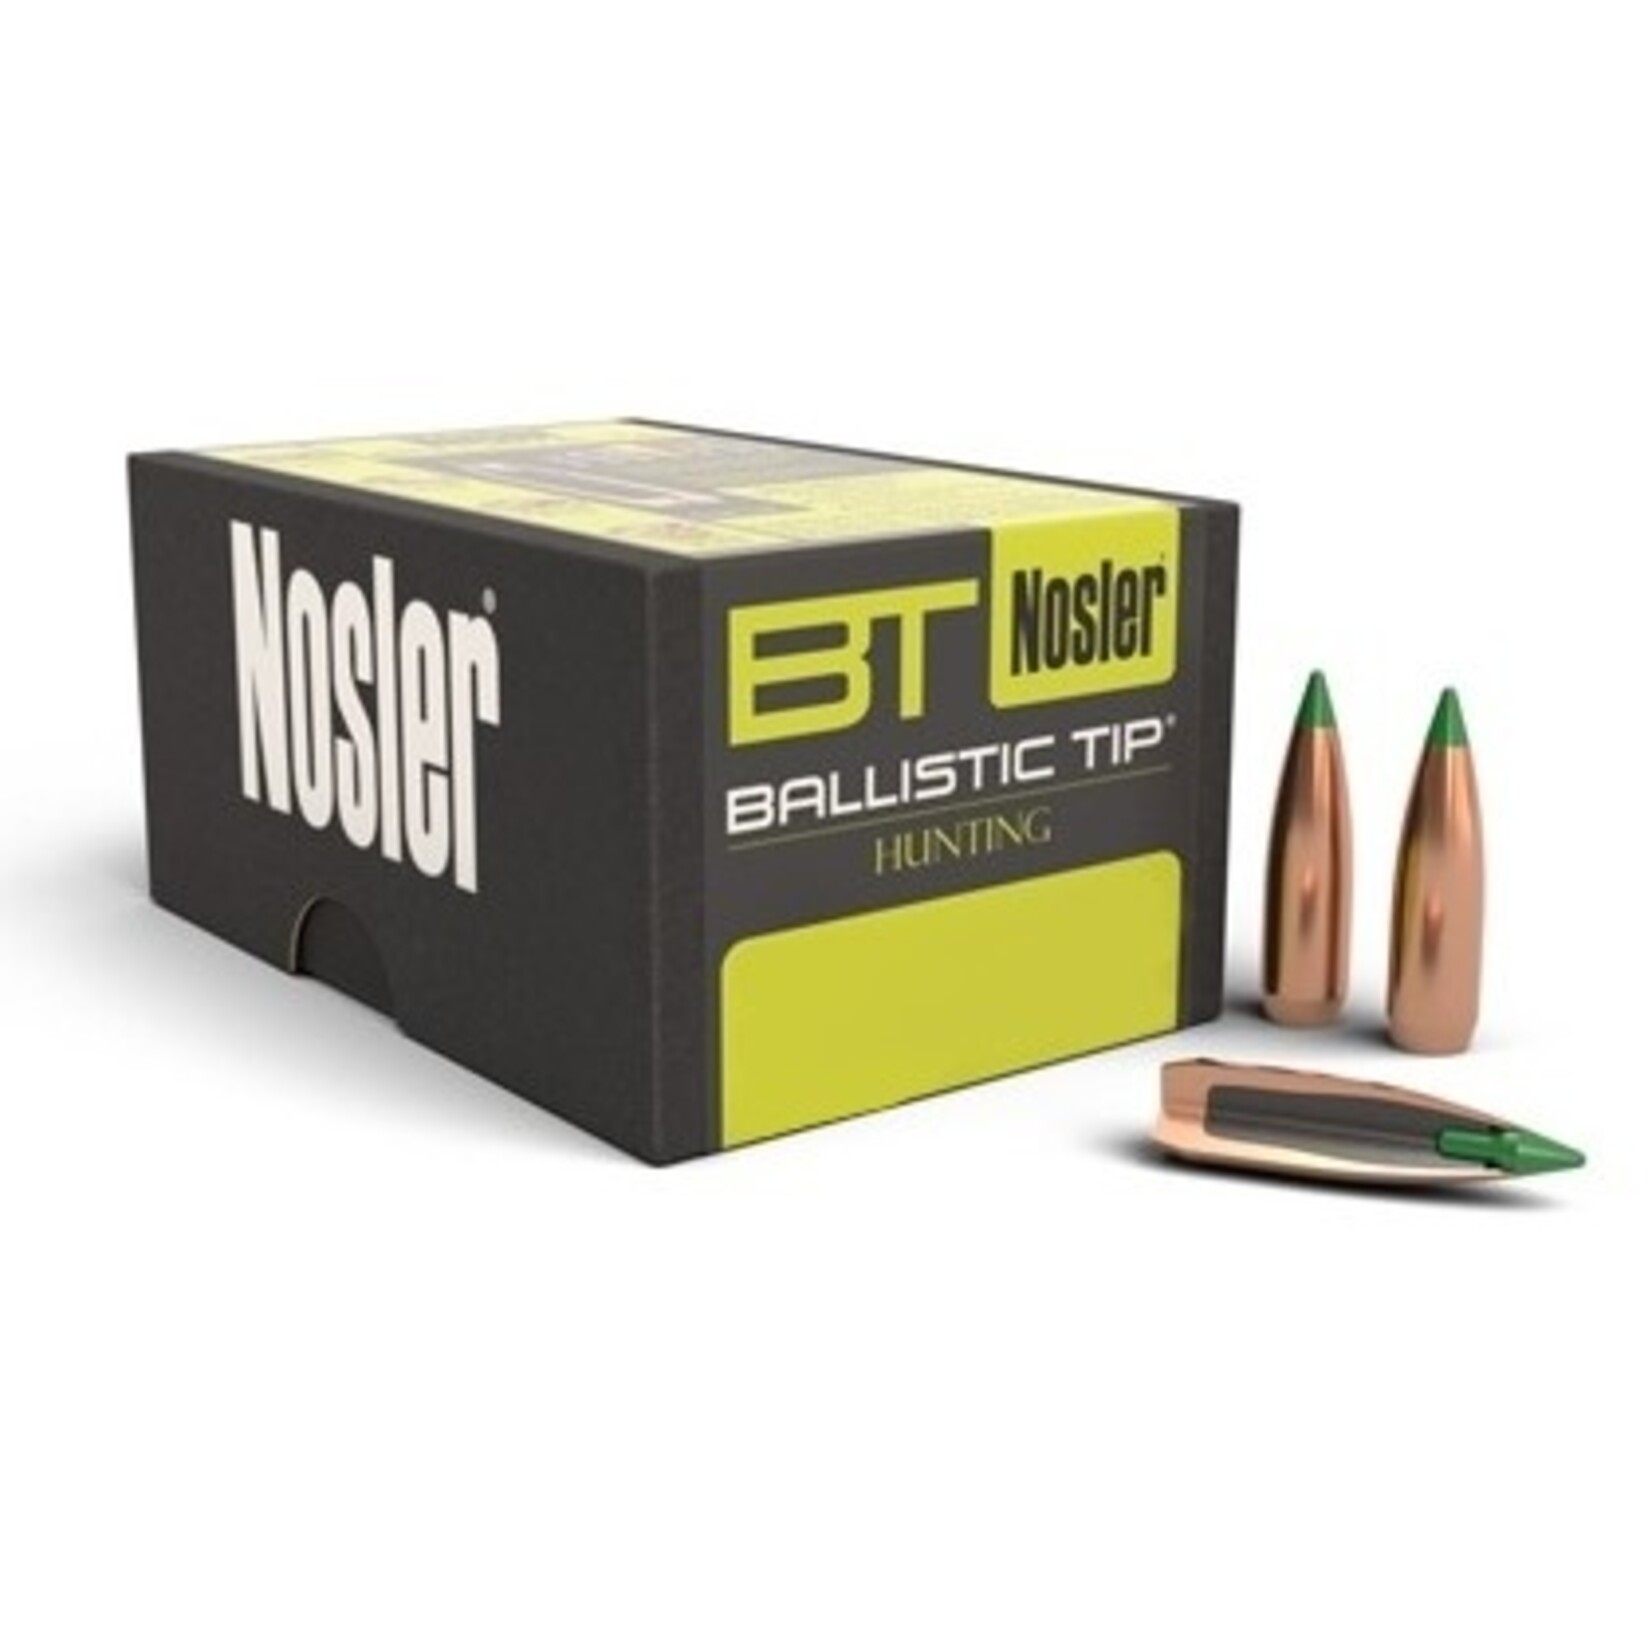 Nosler Nosler Ballistic Tip Hunting Bullets